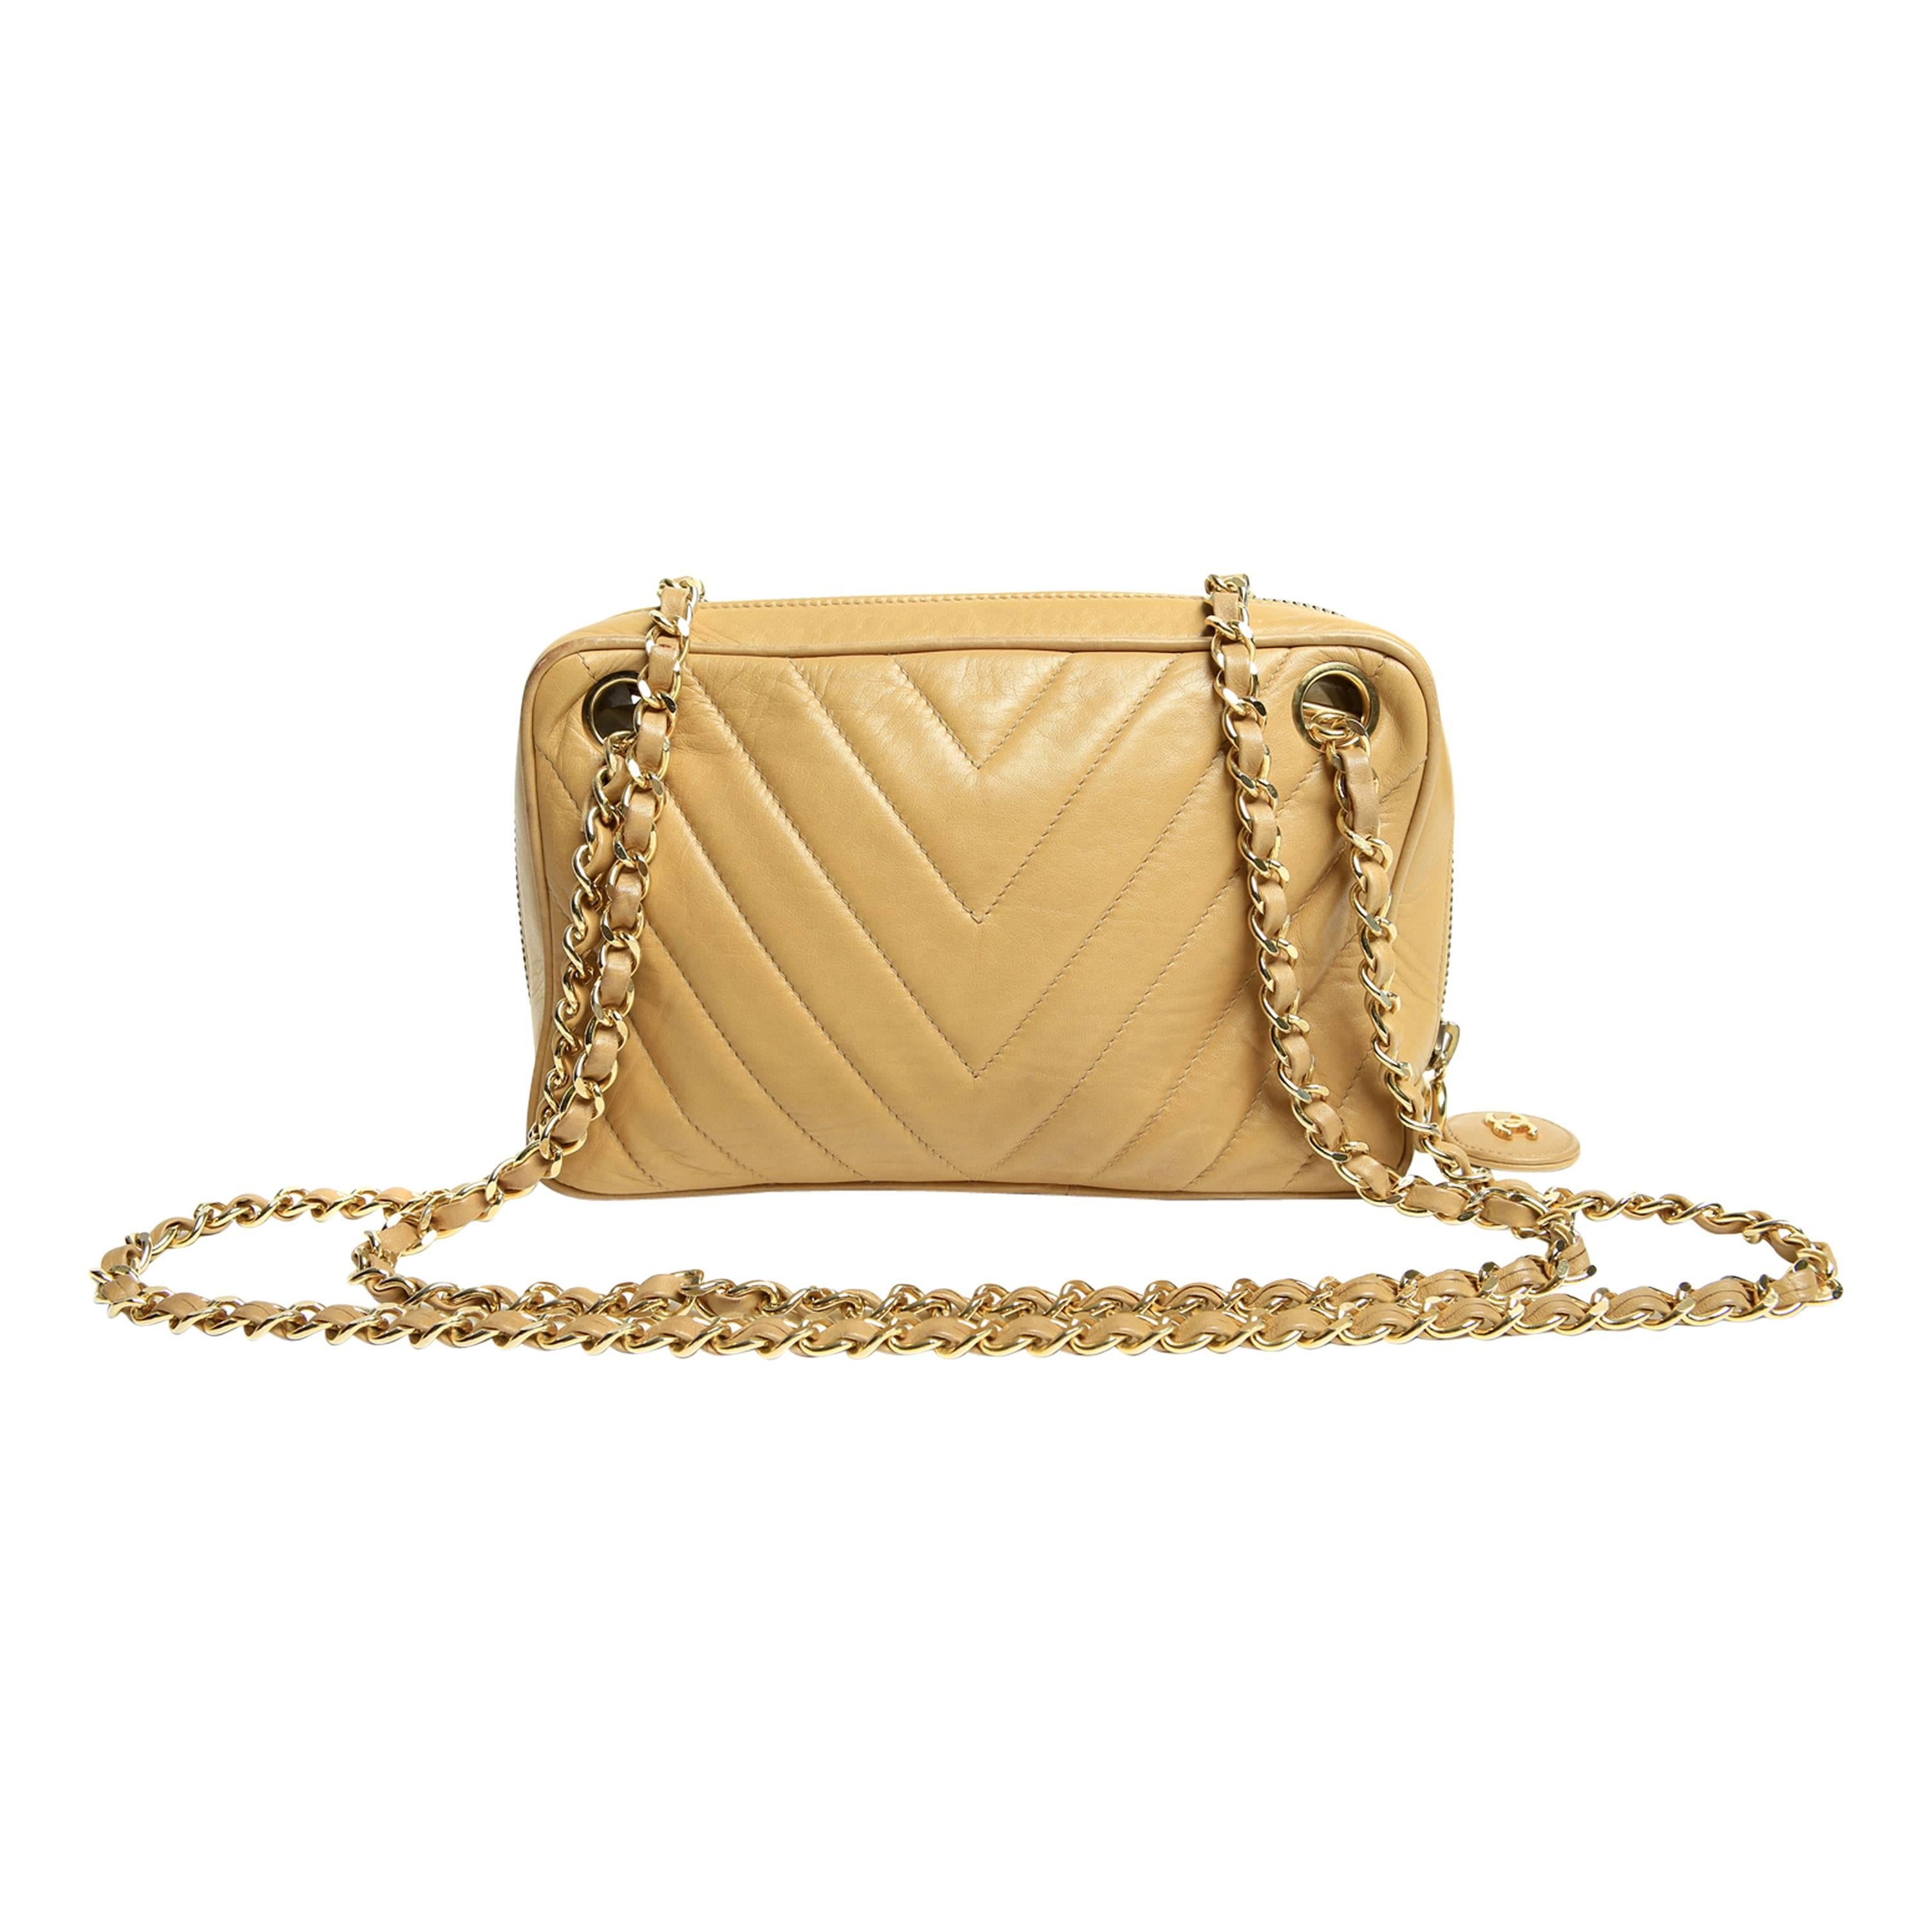 Chanel Beige Leather Vintage Camera Bag